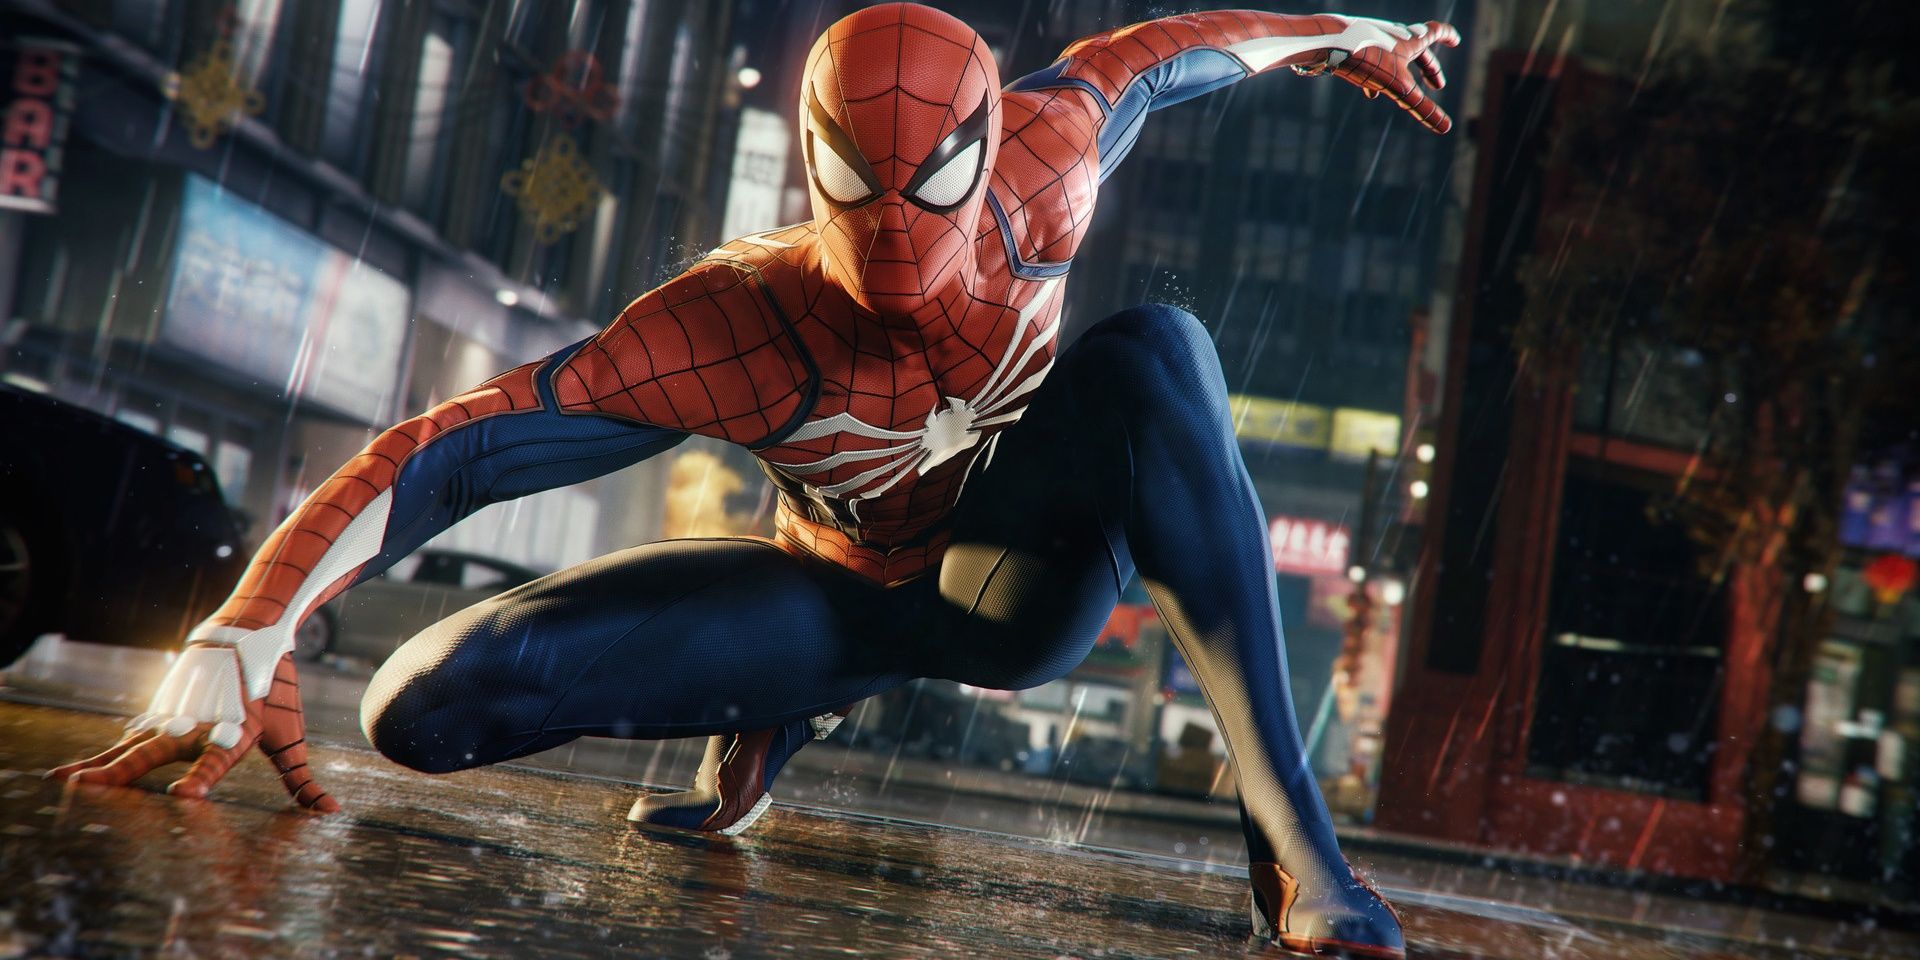 Spider-Man landing in the rain in Marvel's Spider-Man